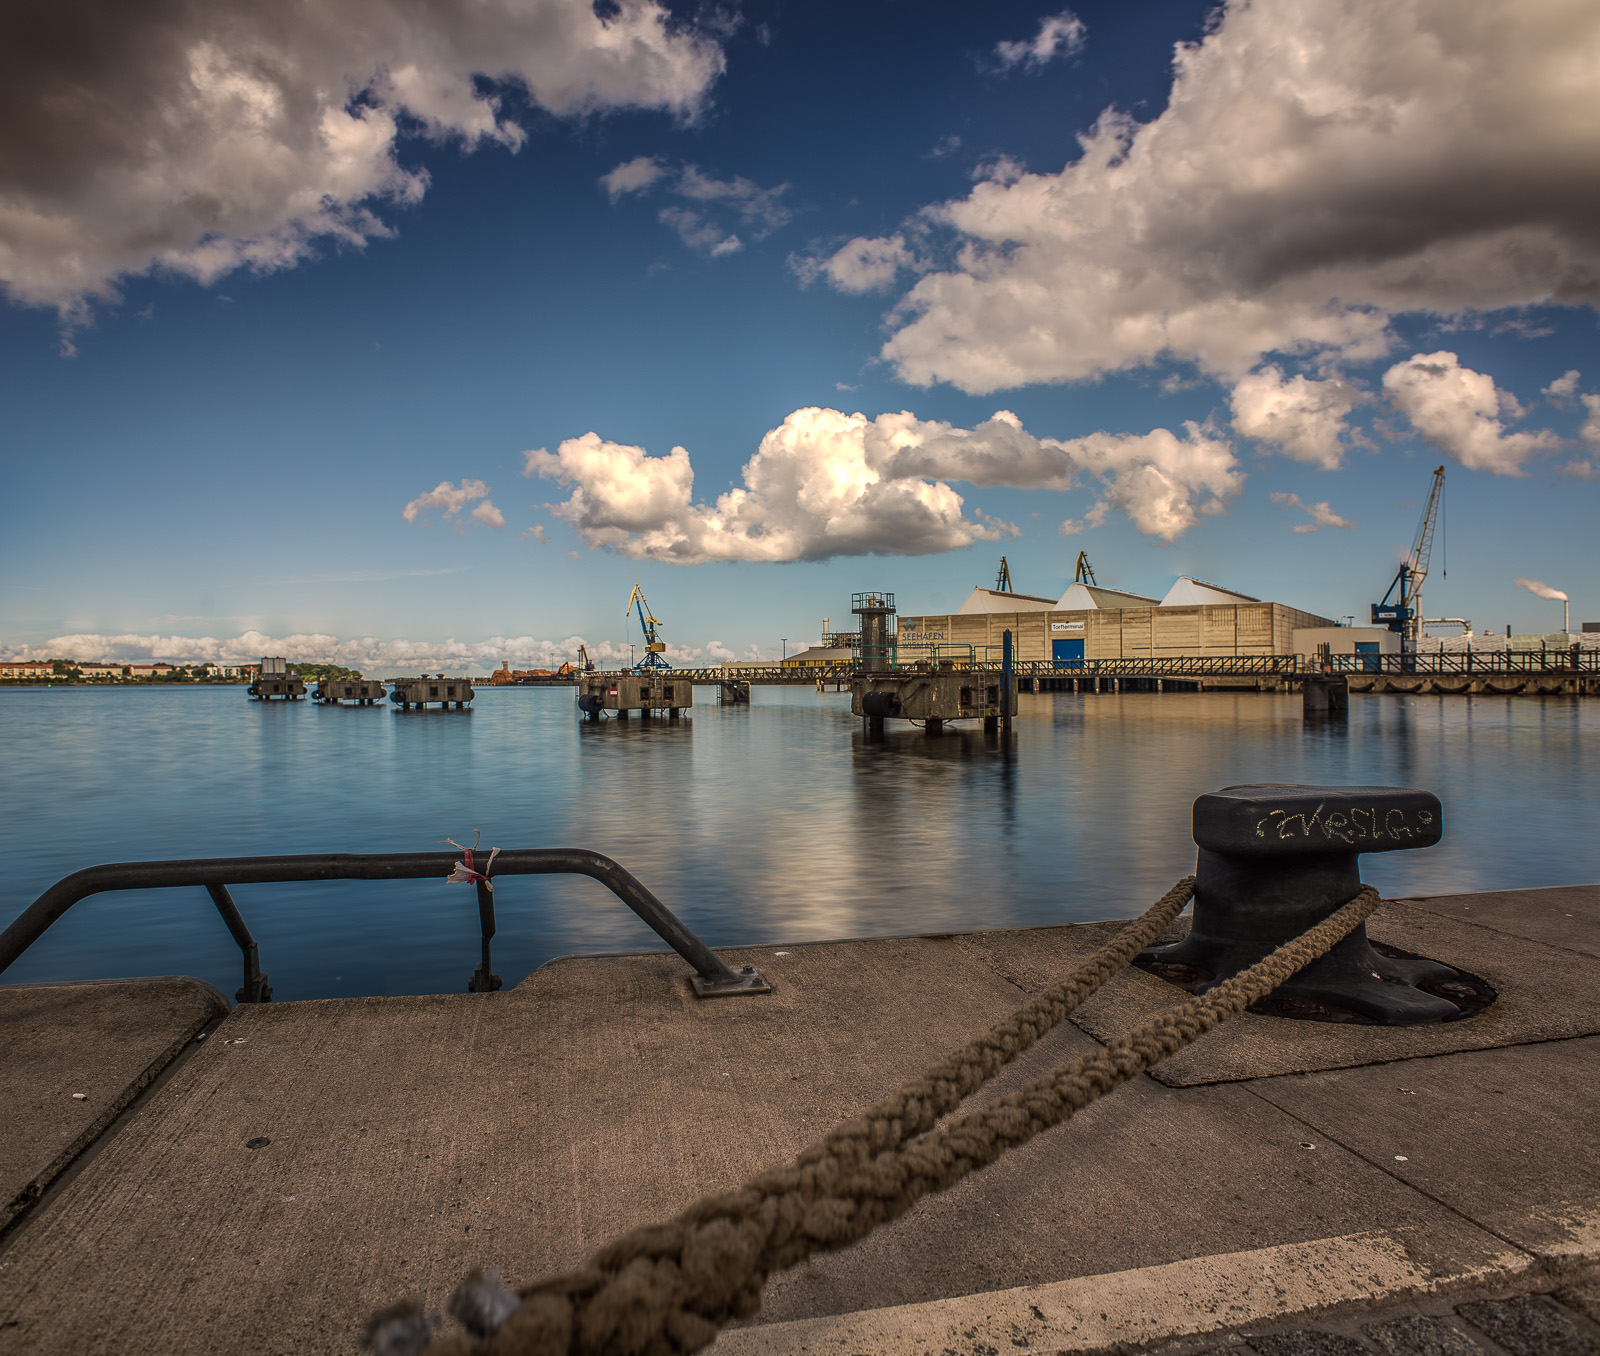 Weitwinkelfoto eines Pollers am Hafenbecken. Im Hintergrund andere Anlagen zum Festmachen von Schiffen und ein Lagerhaus mit Kränen. Darüber viele Wolken.